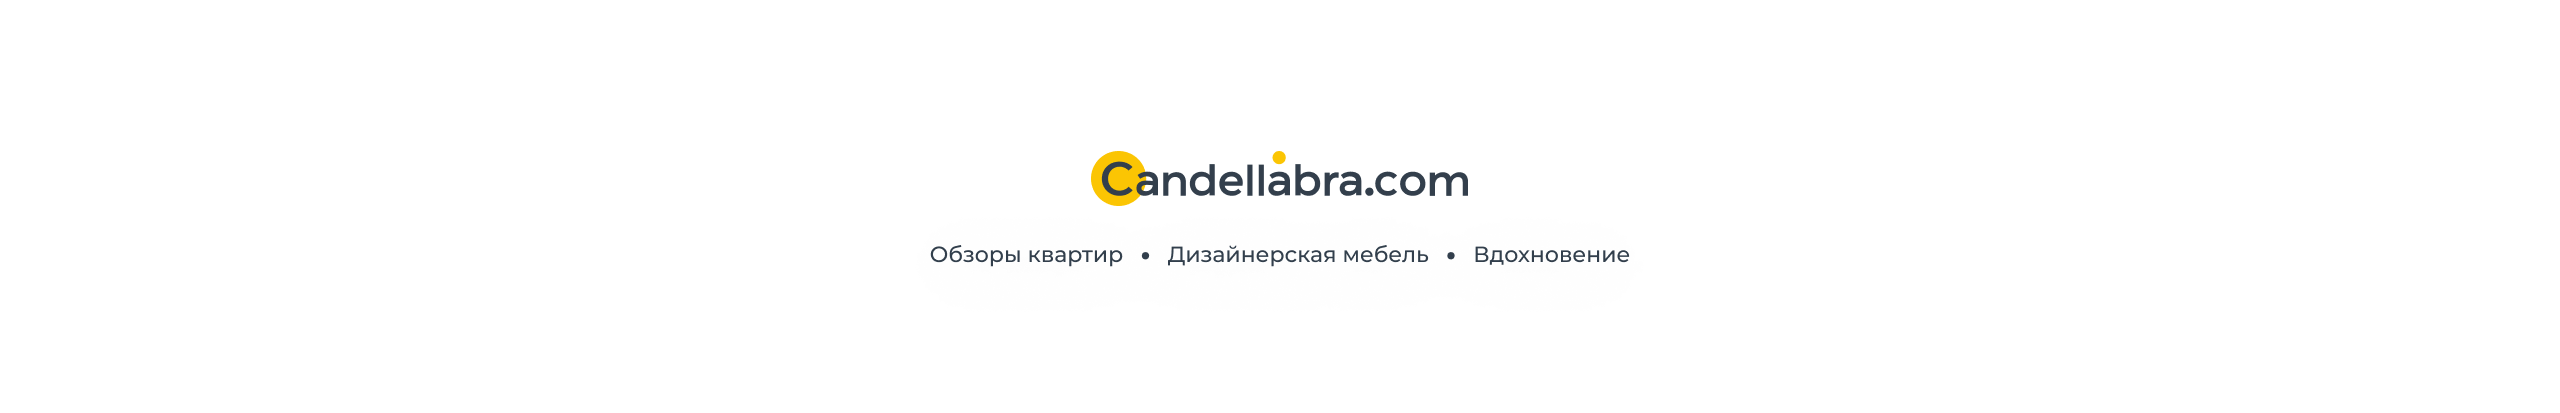 Баннер профиля CANDELLABRA .COM